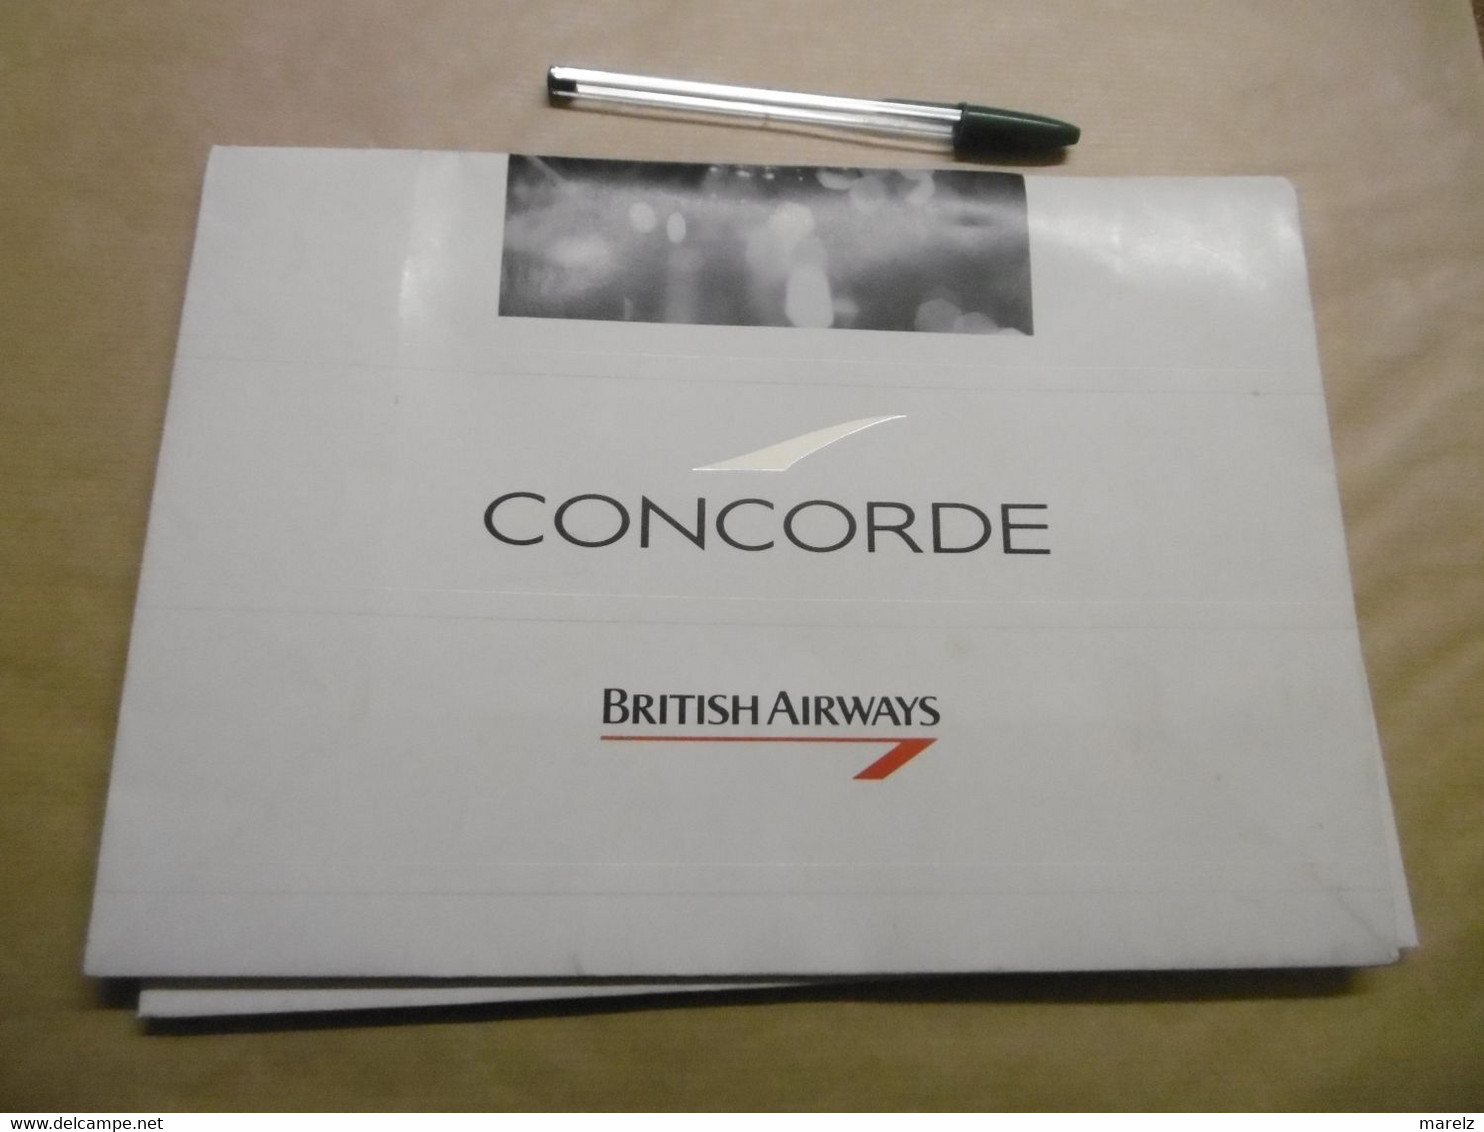 CONCORDE BRITISH AIRWAYS - Pochette Sac Papier Publicitaire KEENPACK - Publicité Cie Aérienne British Airways CONCORDE - Pubblicità